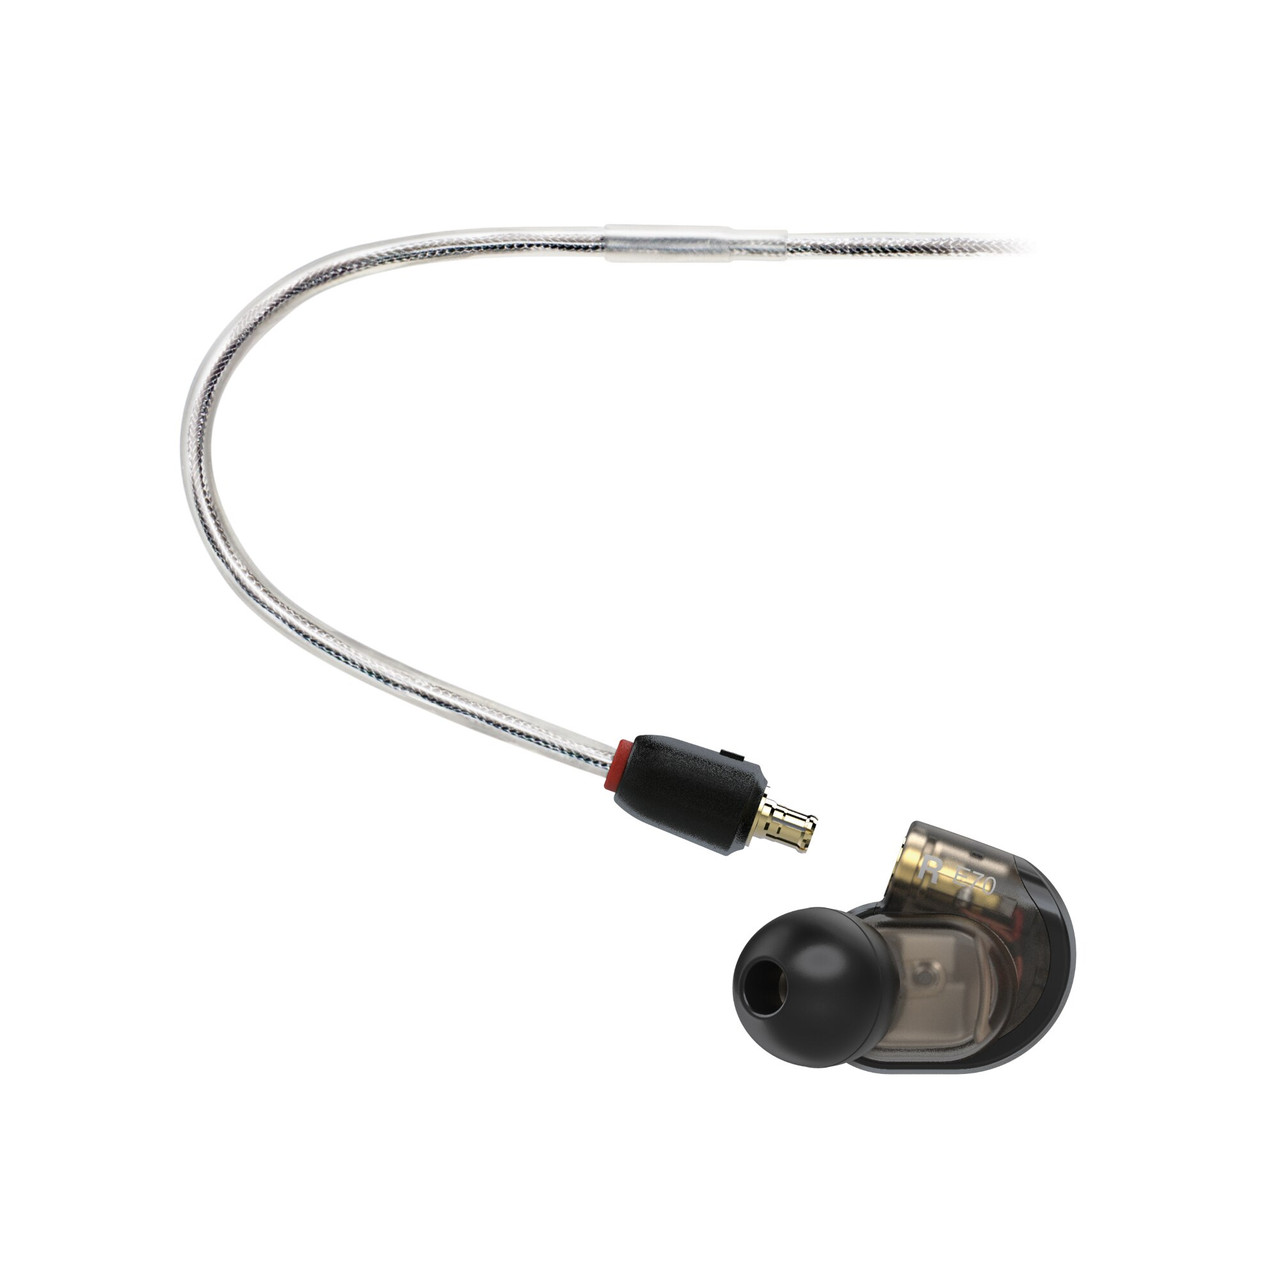 Audio-Technica ATH-E70 Triple Driver In-Ear Monitor Earphones